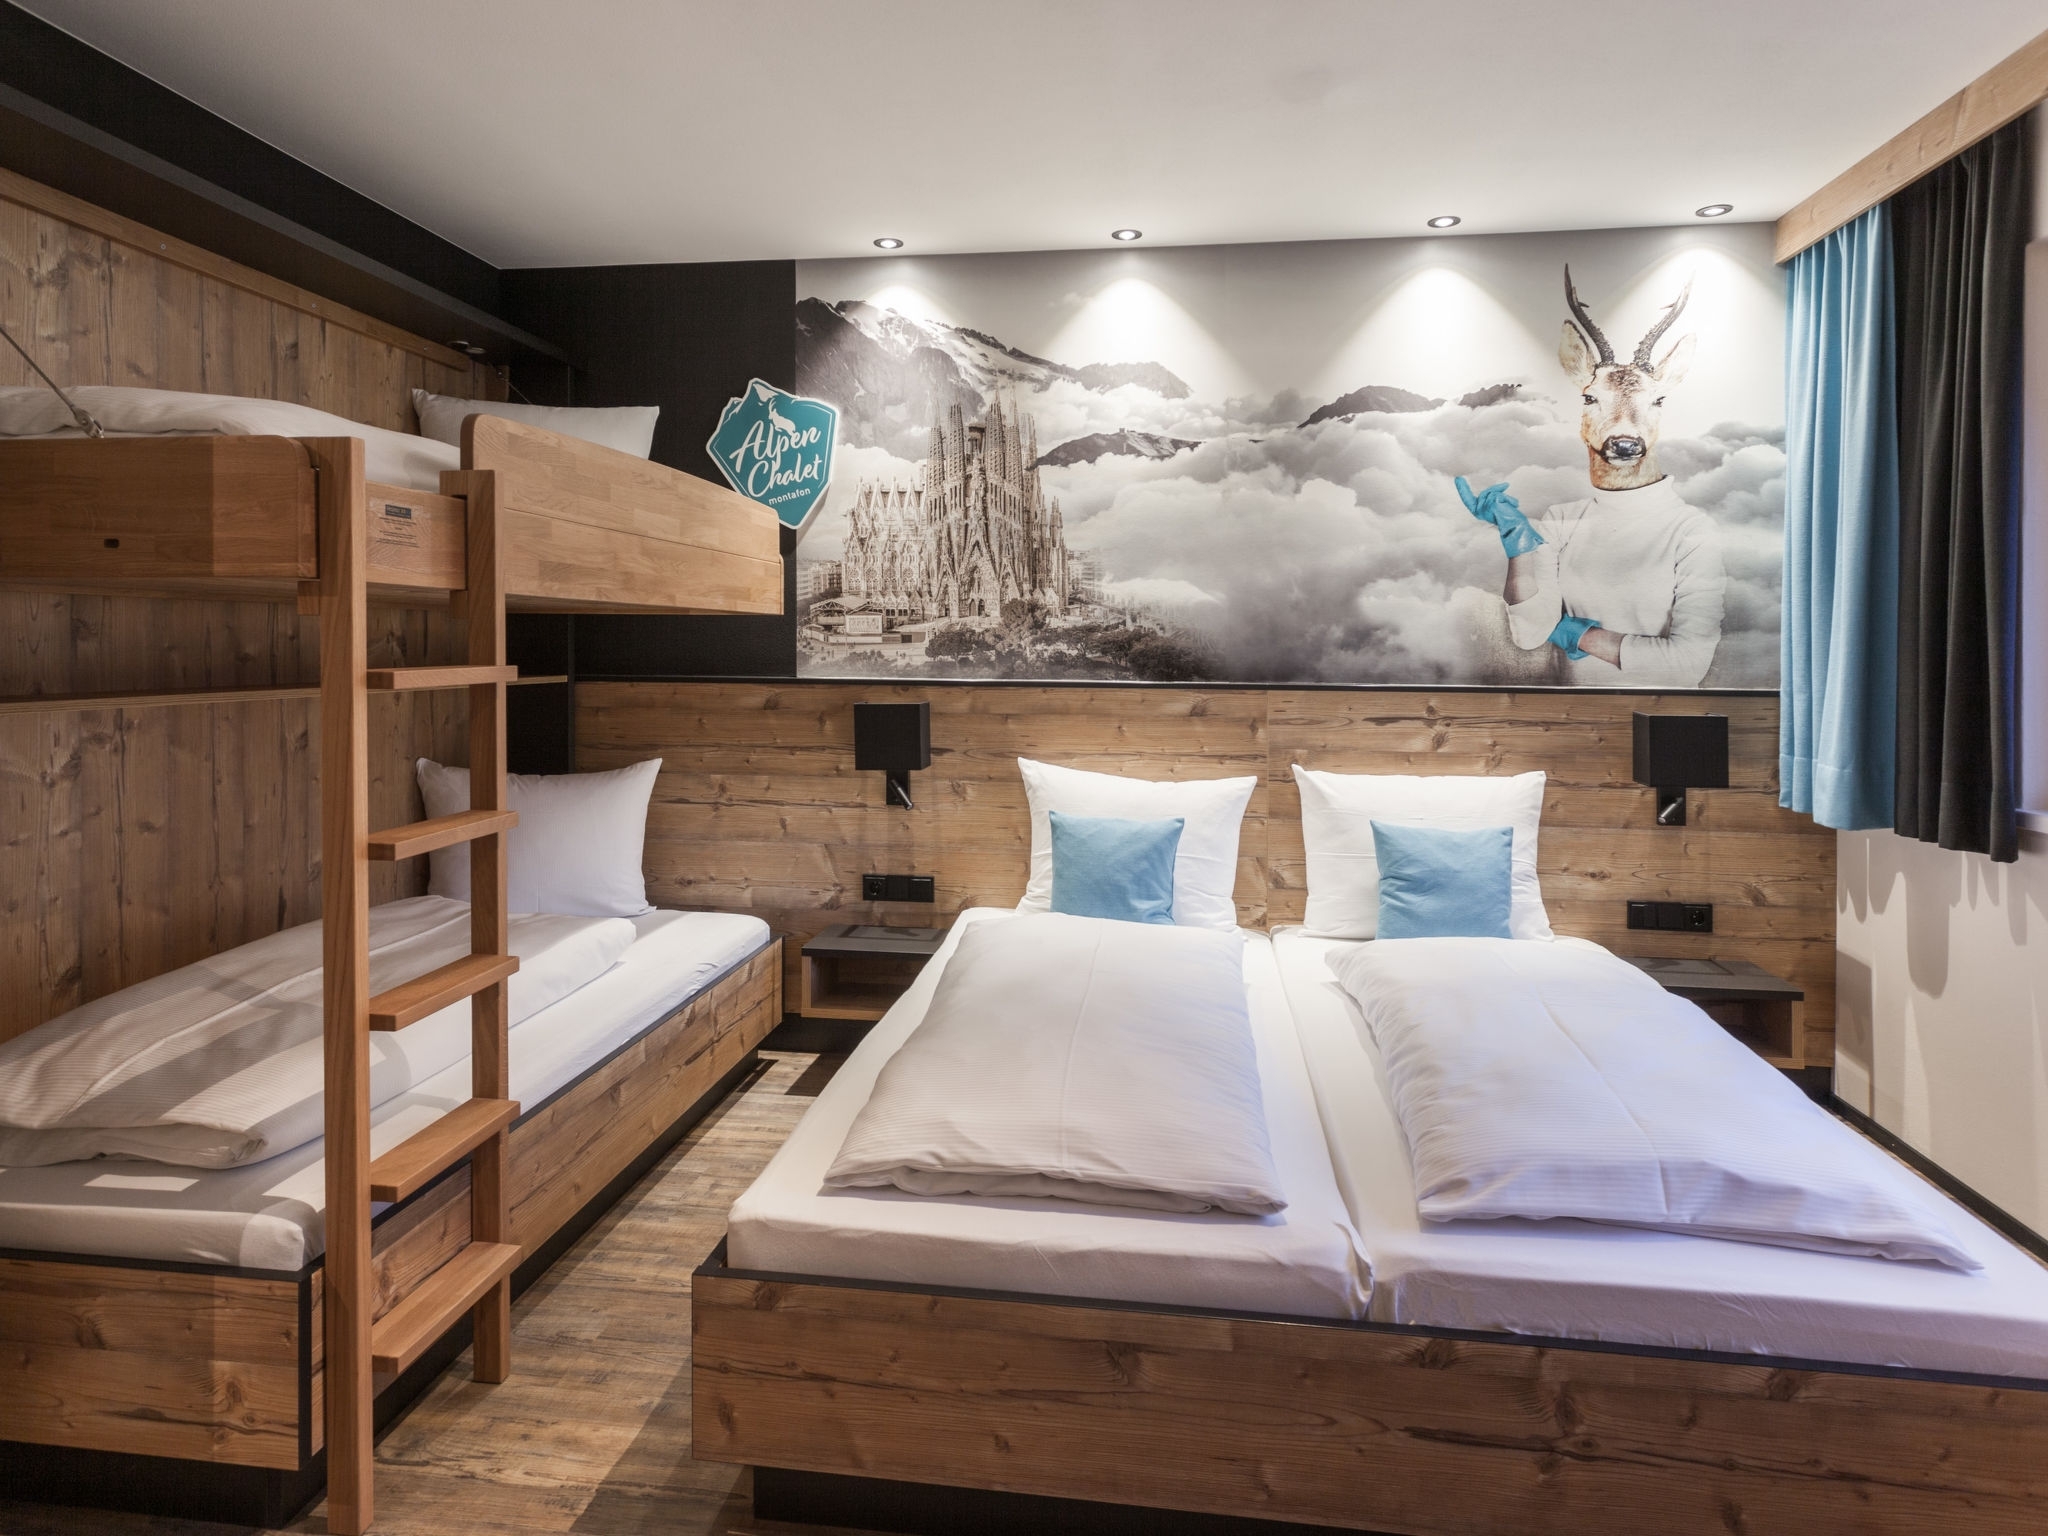 Luxus-Chalet im Montafon: Schlafzimmer (Beispiel)